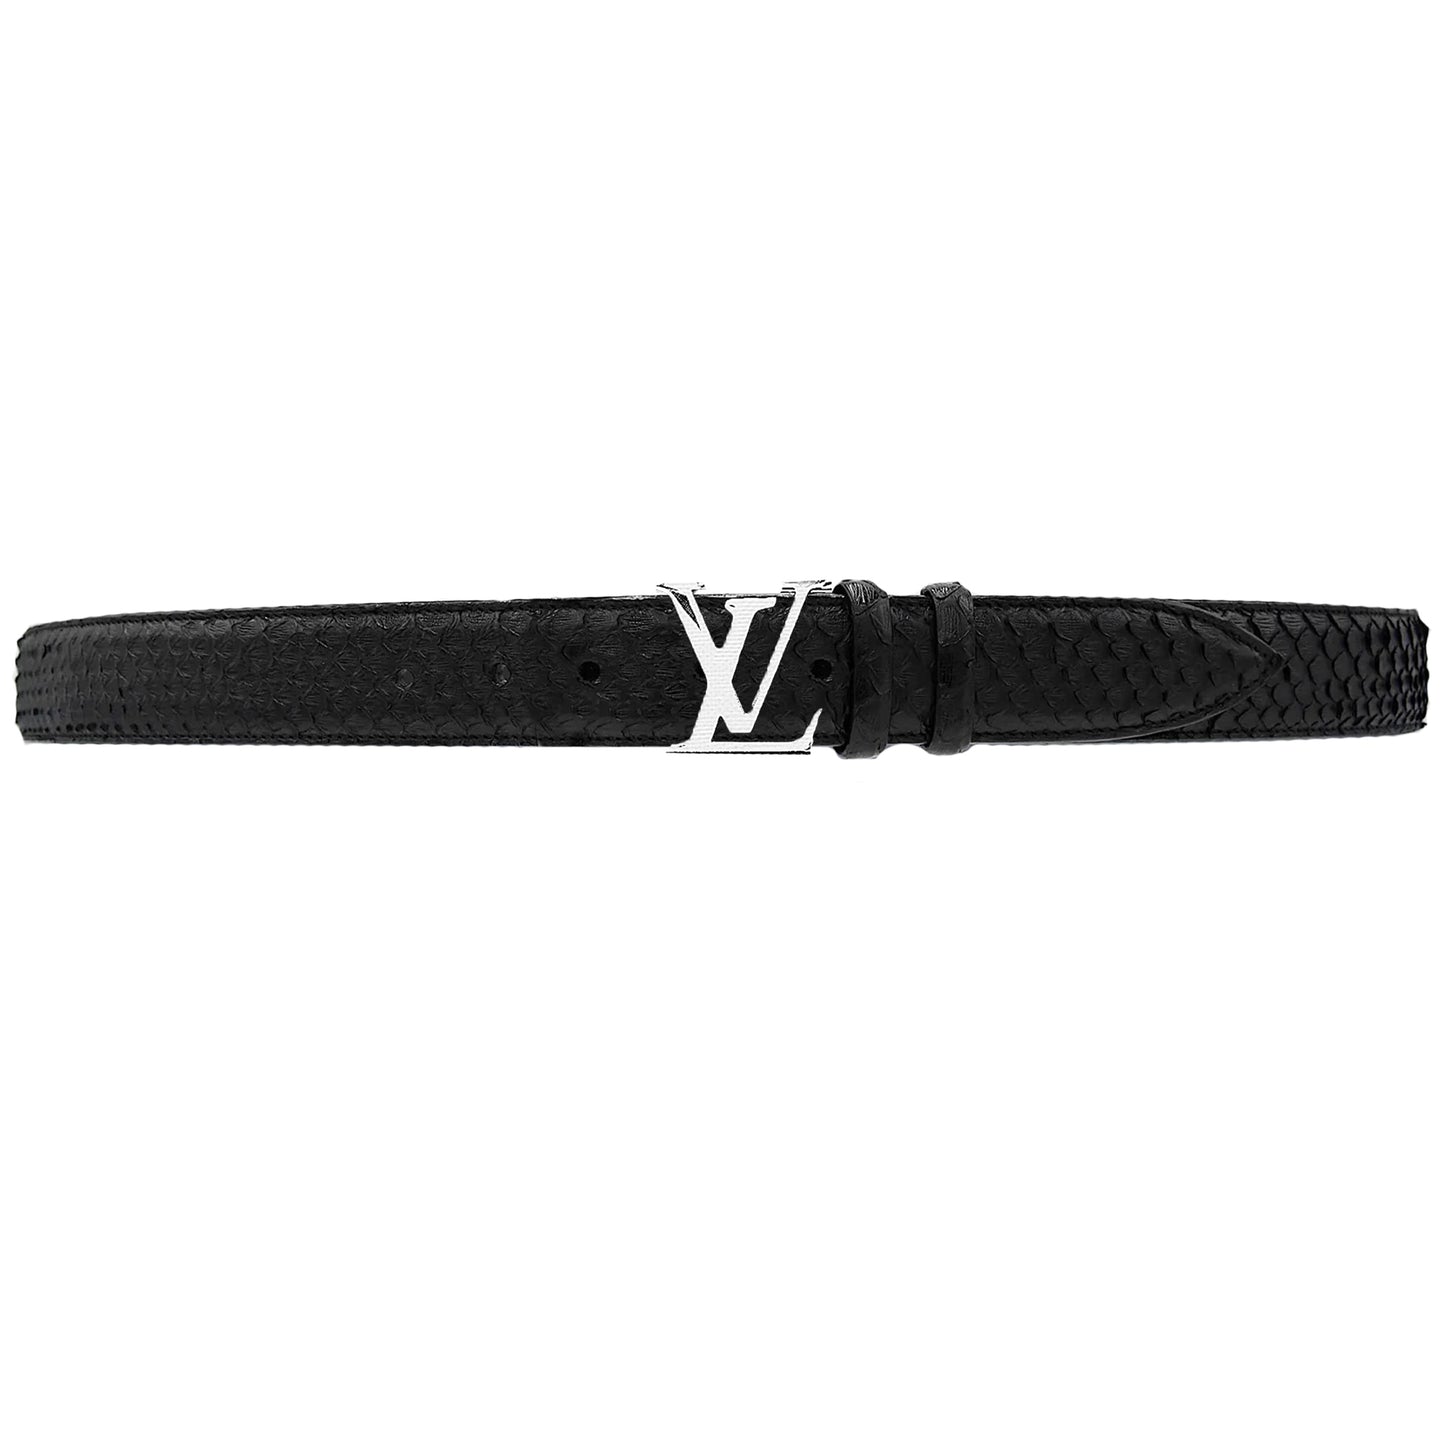 Replacement Men's Belt for Luis Vuitton Buckles